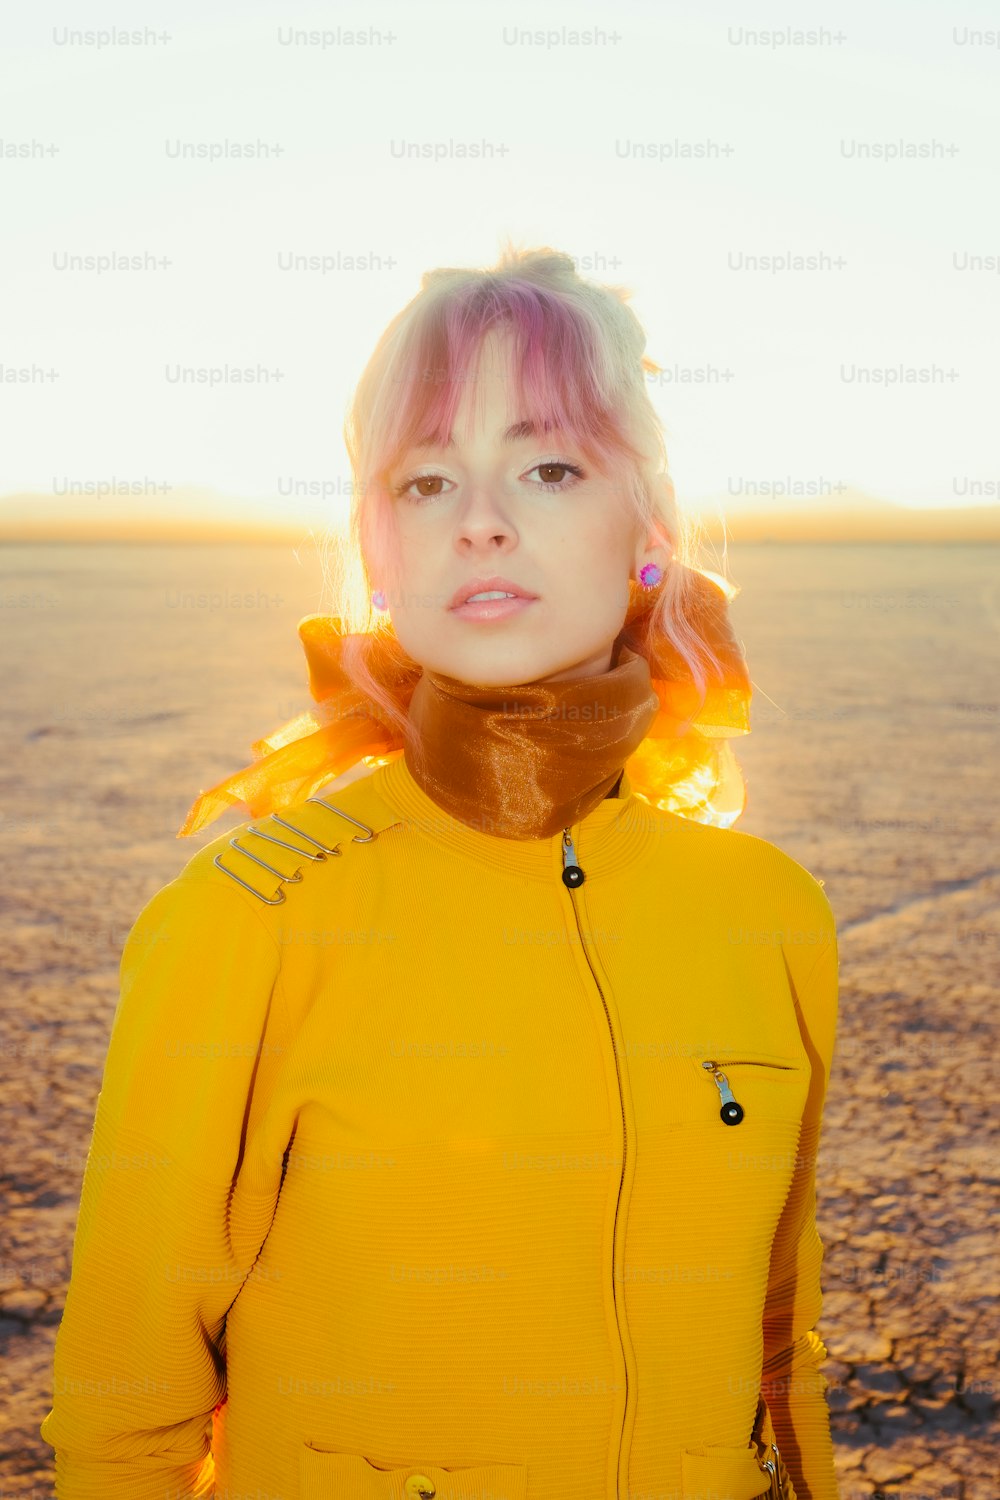 Eine Frau mit rosa Haaren, die eine gelbe Jacke trägt